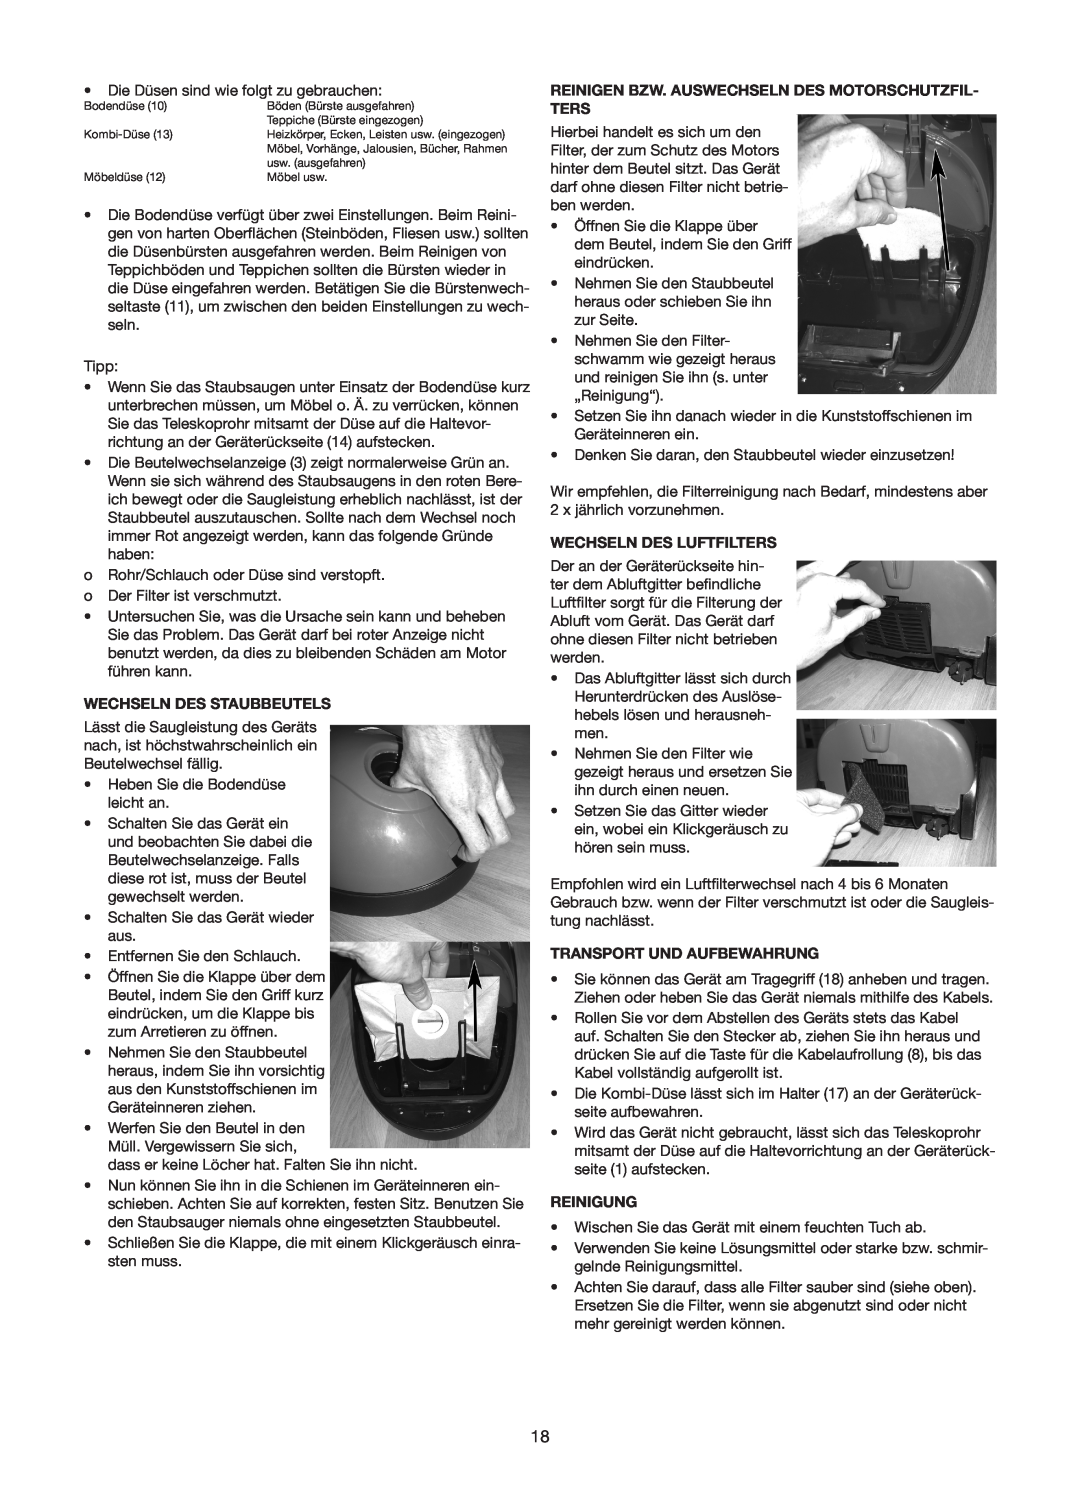 Melissa 640-116, 640-131 manual Wechseln Des Staubbeutels, Wechseln Des Luftfilters, Transport Und Aufbewahrung, Reinigung 